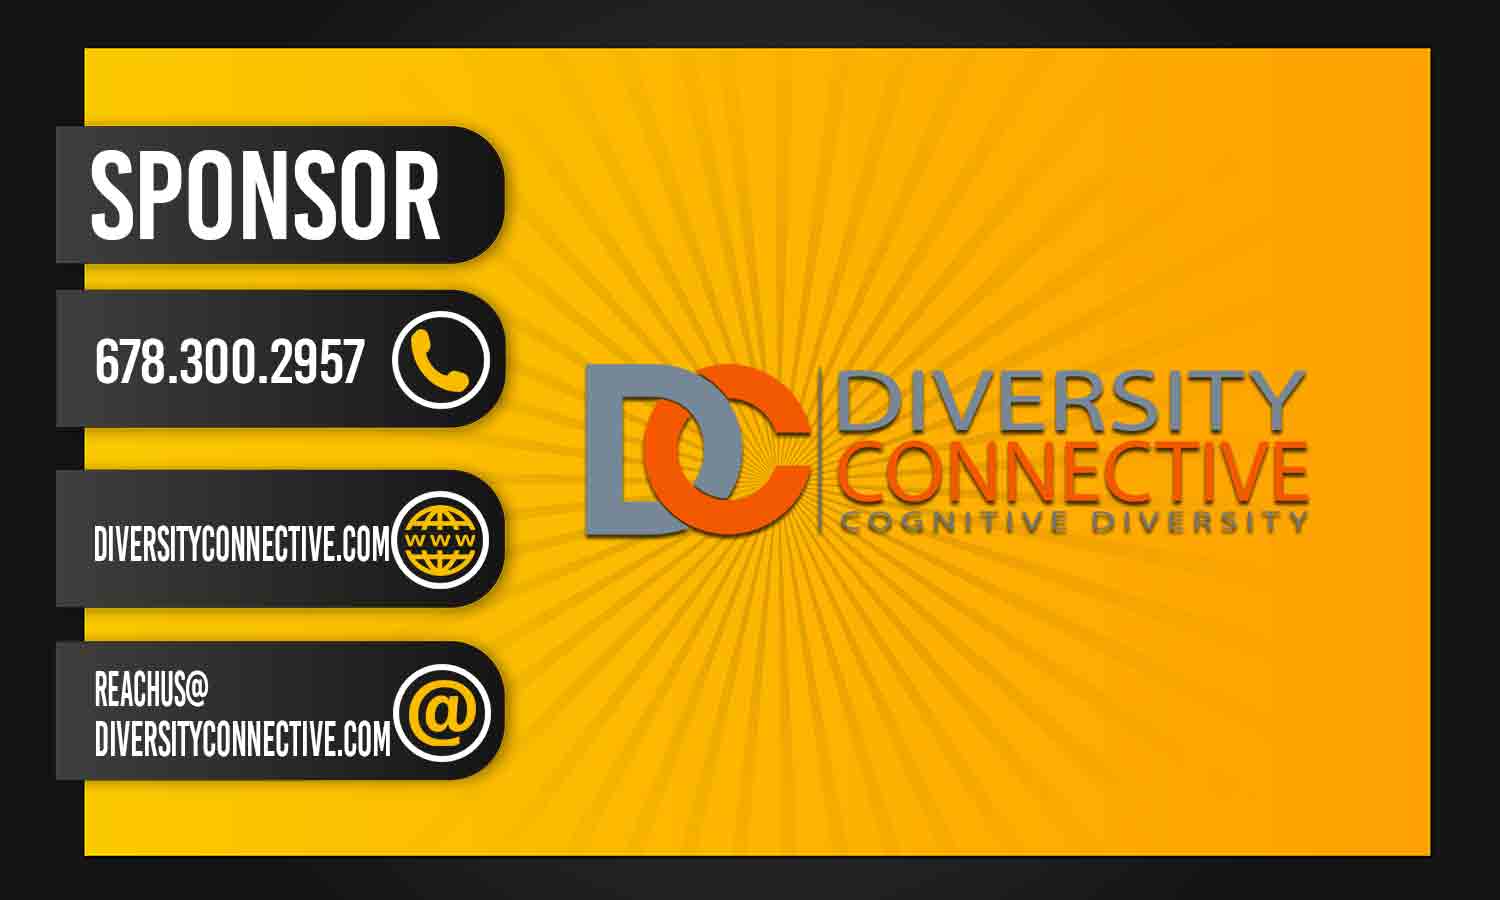 Diversity Connective, Inc.